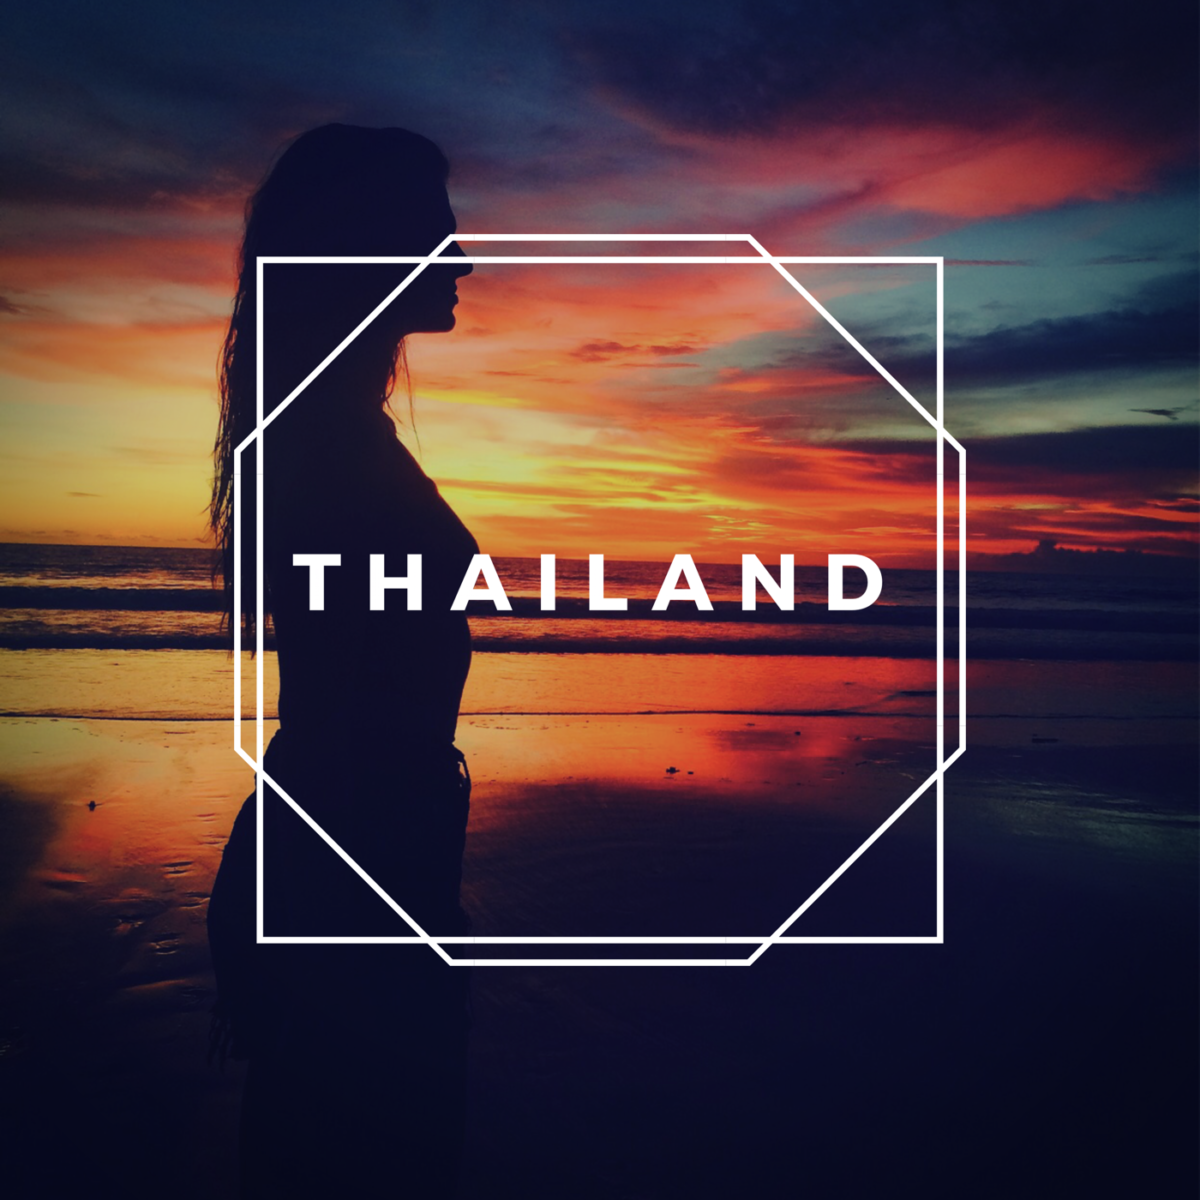 travel Thailand